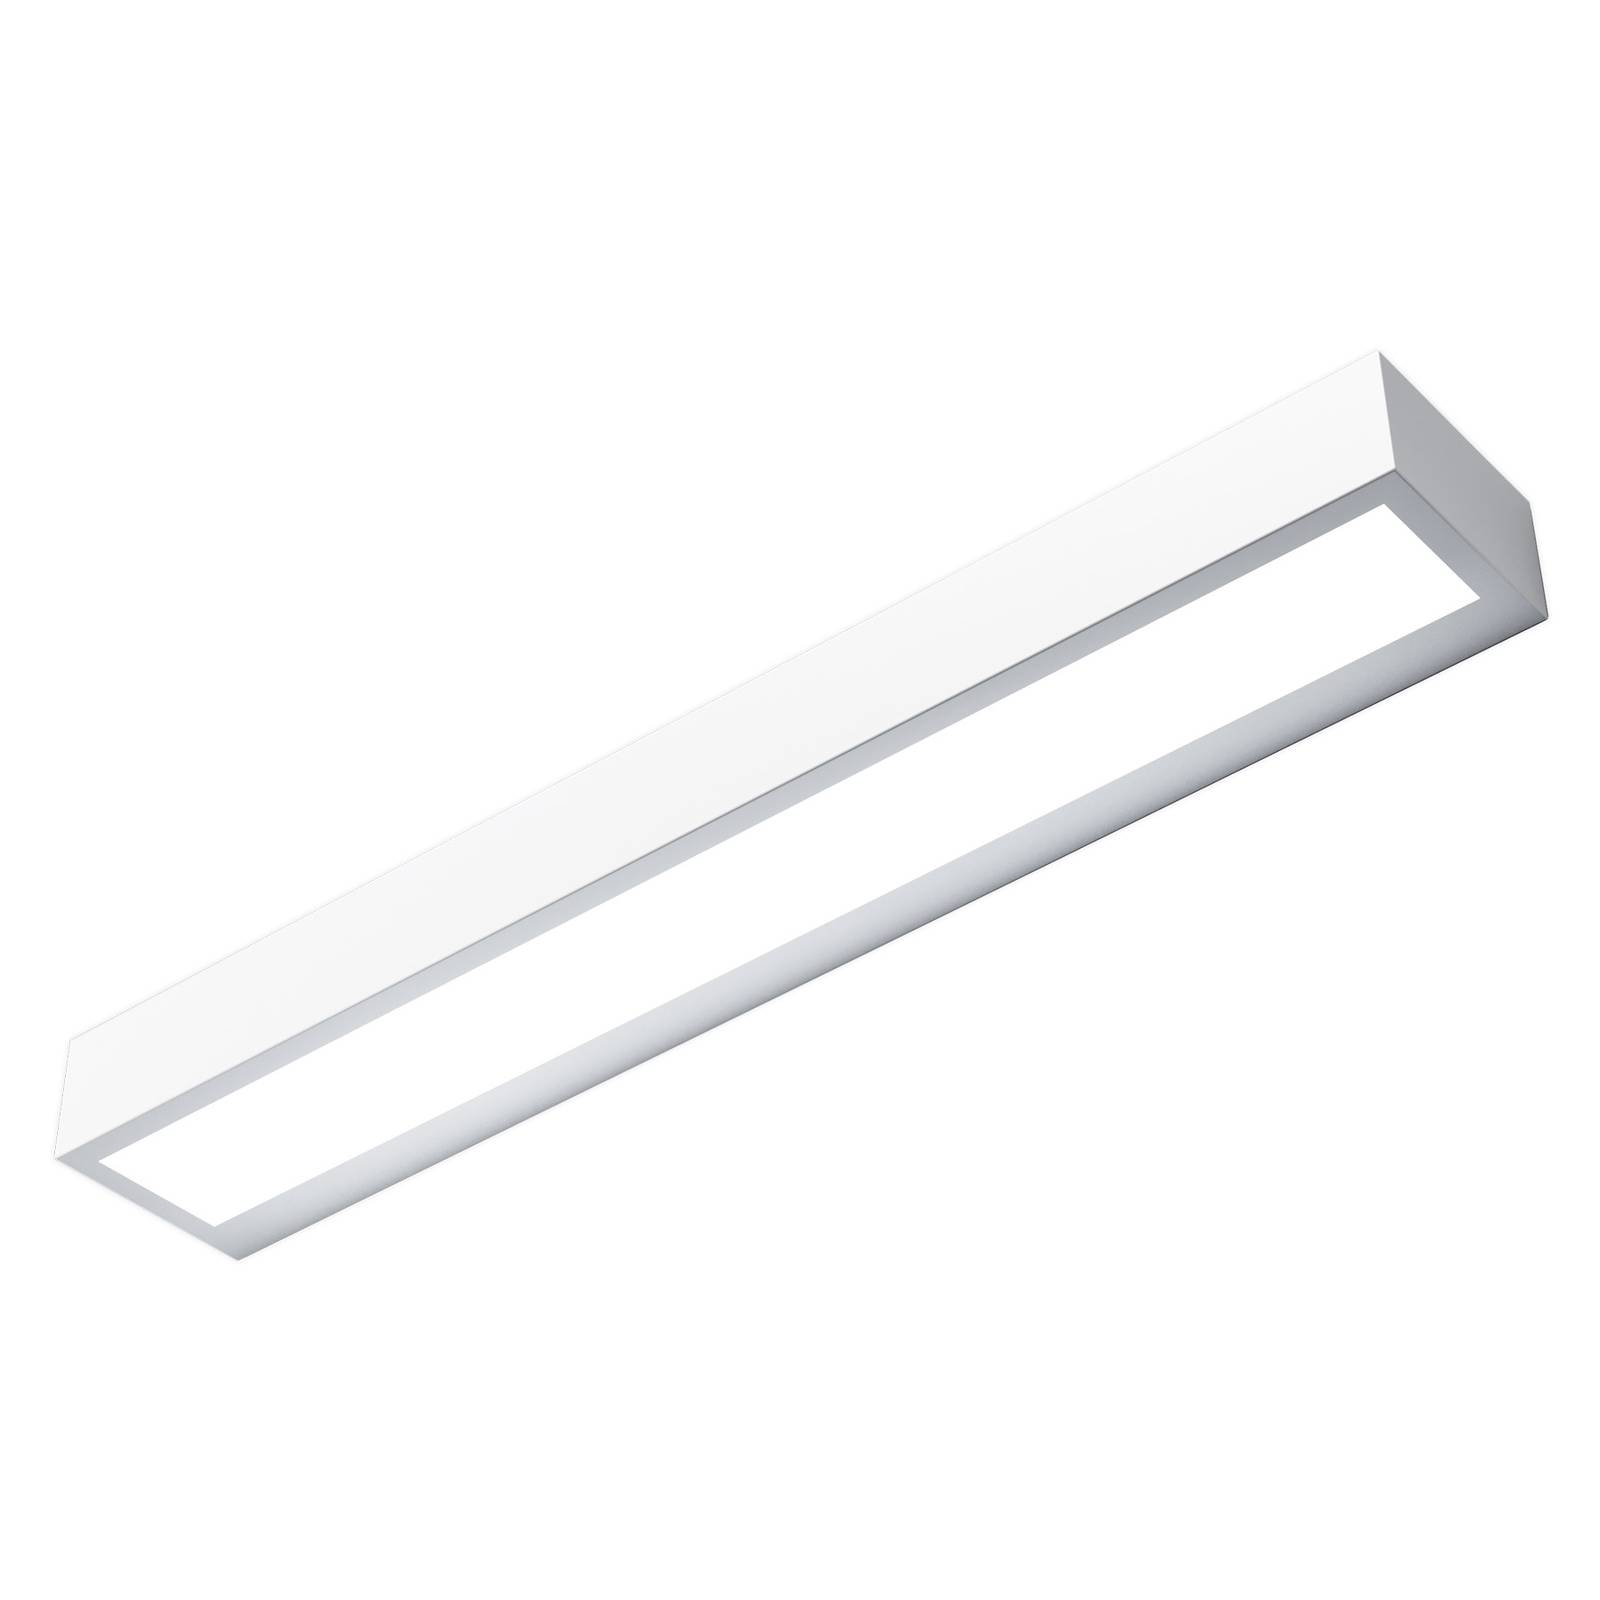 LED-Wandleuchte Mera, Breite 40 cm, weiß, 4.000K